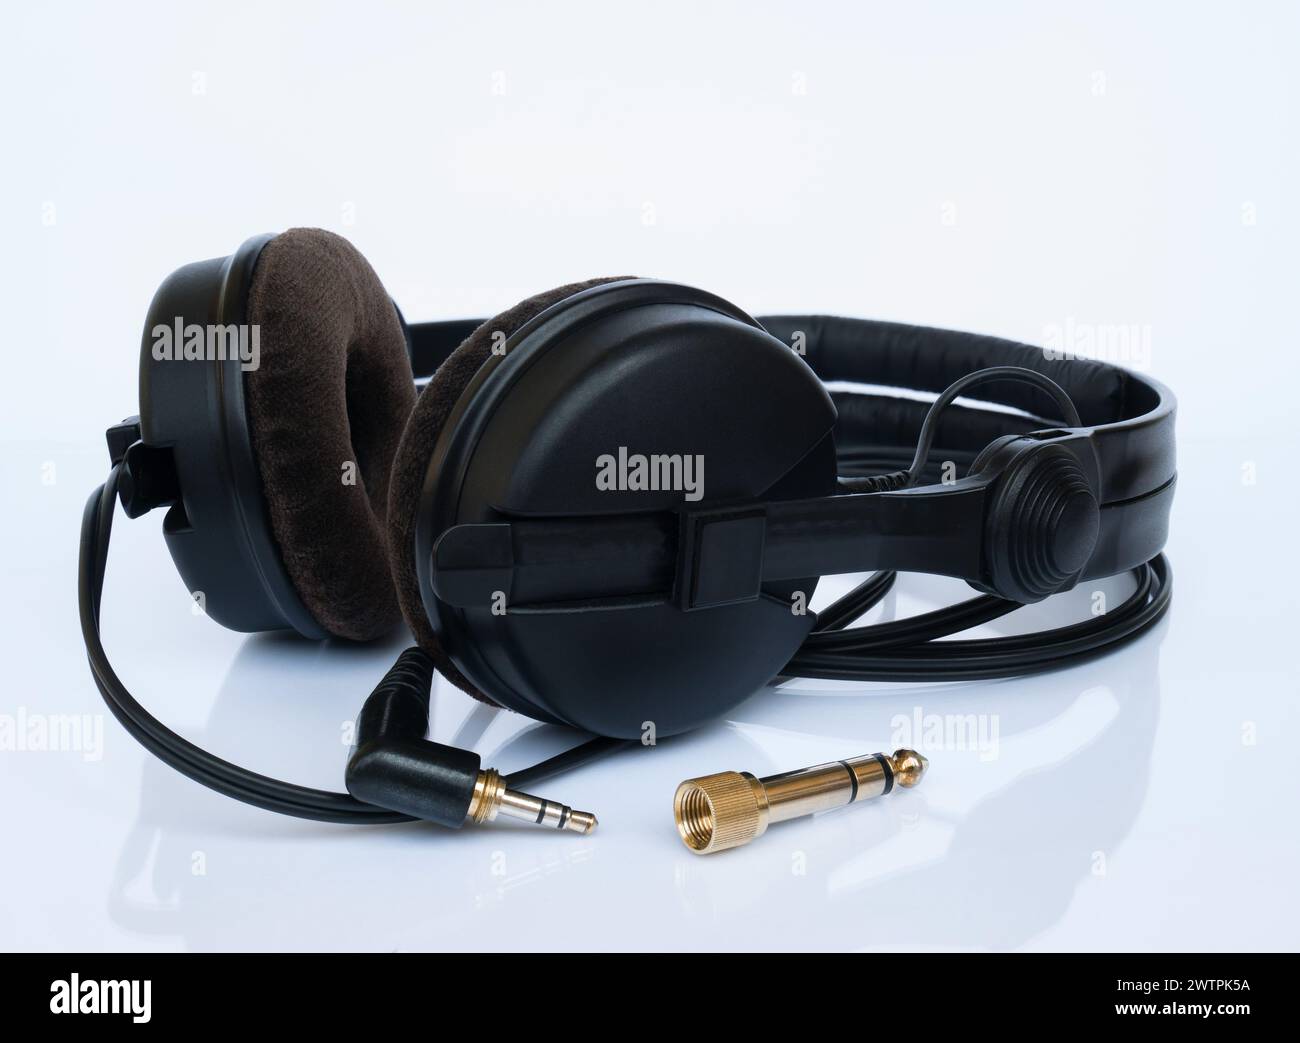 Professionelle schwarze DJ-Kopfhörer mit Velor-Ohrpolstern und vergoldetem 6,3-mm-Klinkenadapter auf weißem Hintergrund mit Reflexion Stockfoto